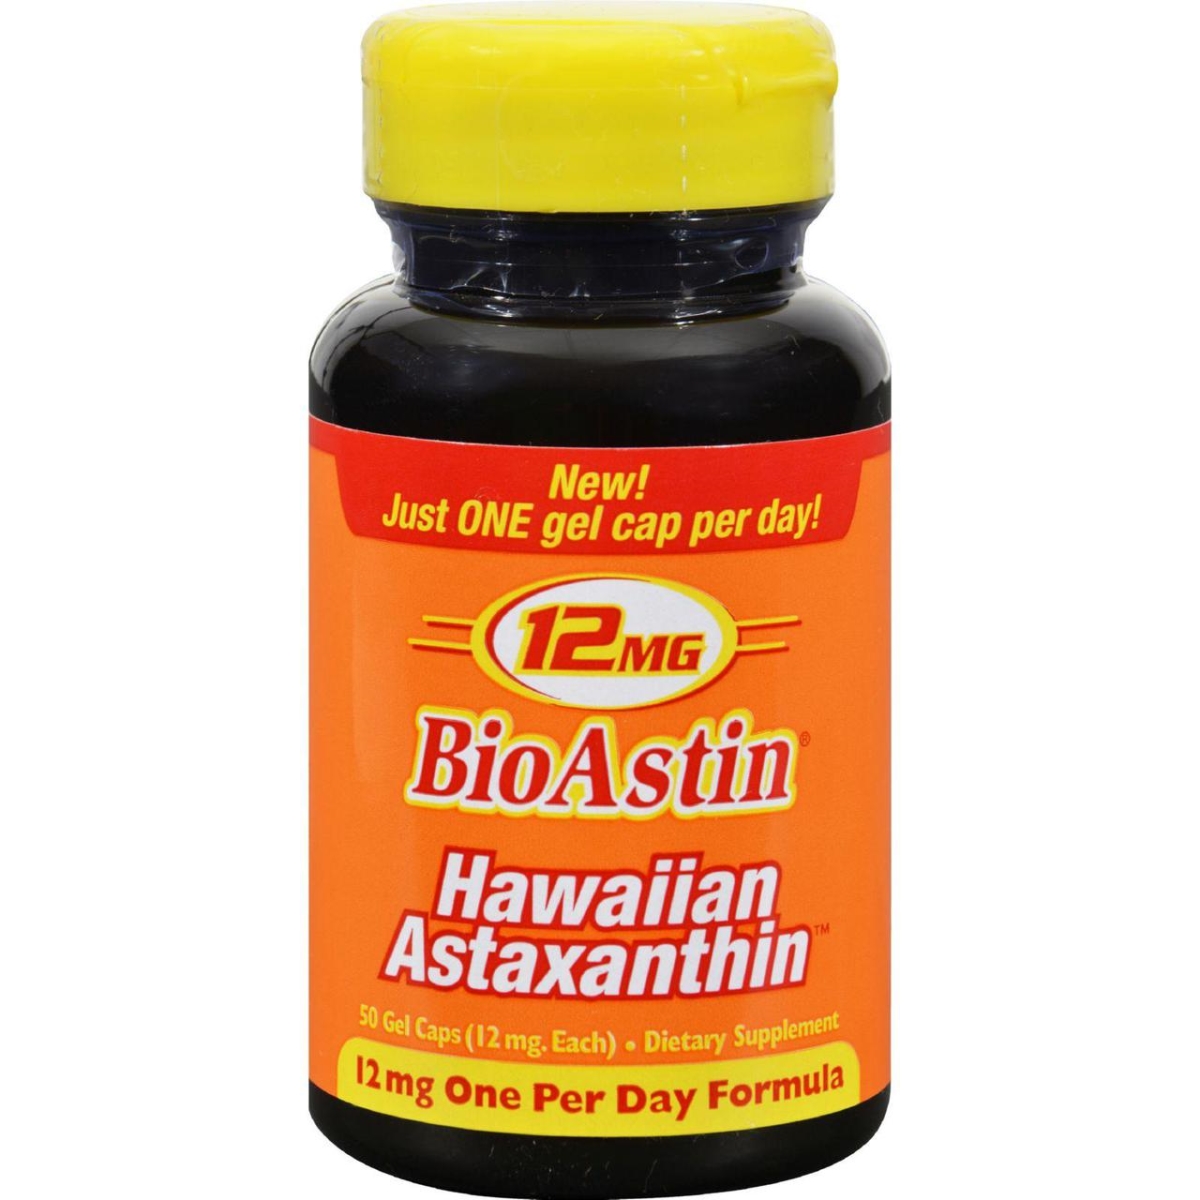 Hg1097831 12 Mg Bioastin Hawaiin Astaxanthin - 50 Gel Capsules